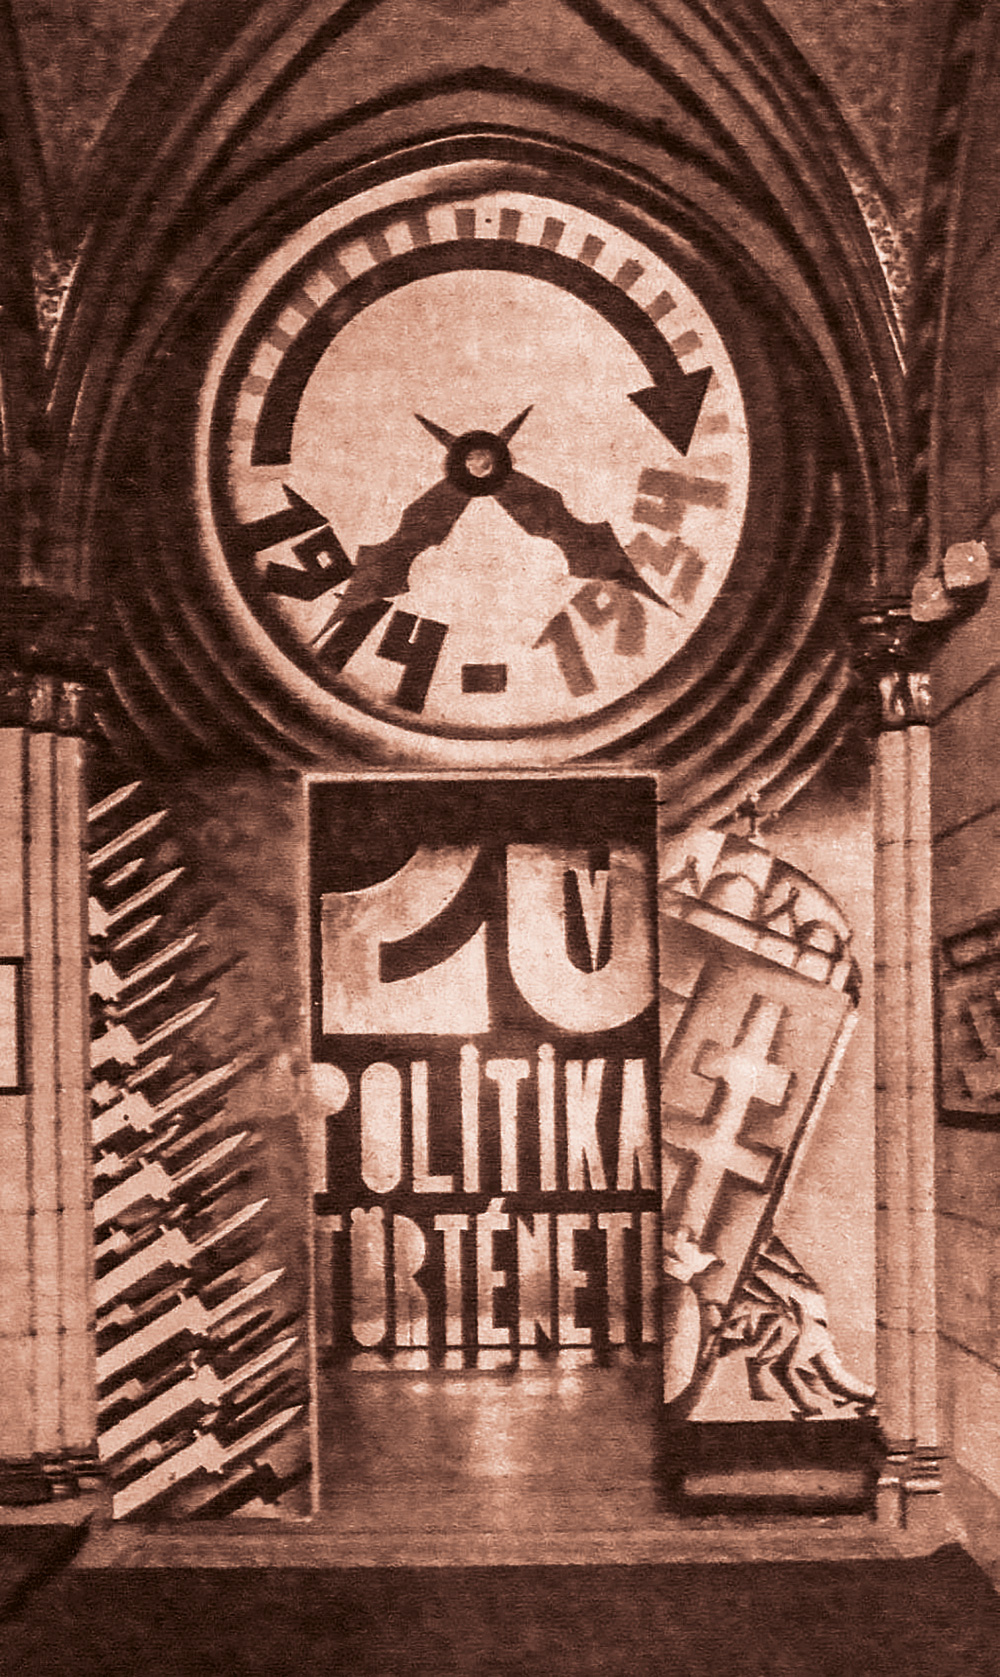 A 20 év politikai története című kiállítás bejáratának installációja  Magyar Nemzeti Levéltár Országos Levéltára